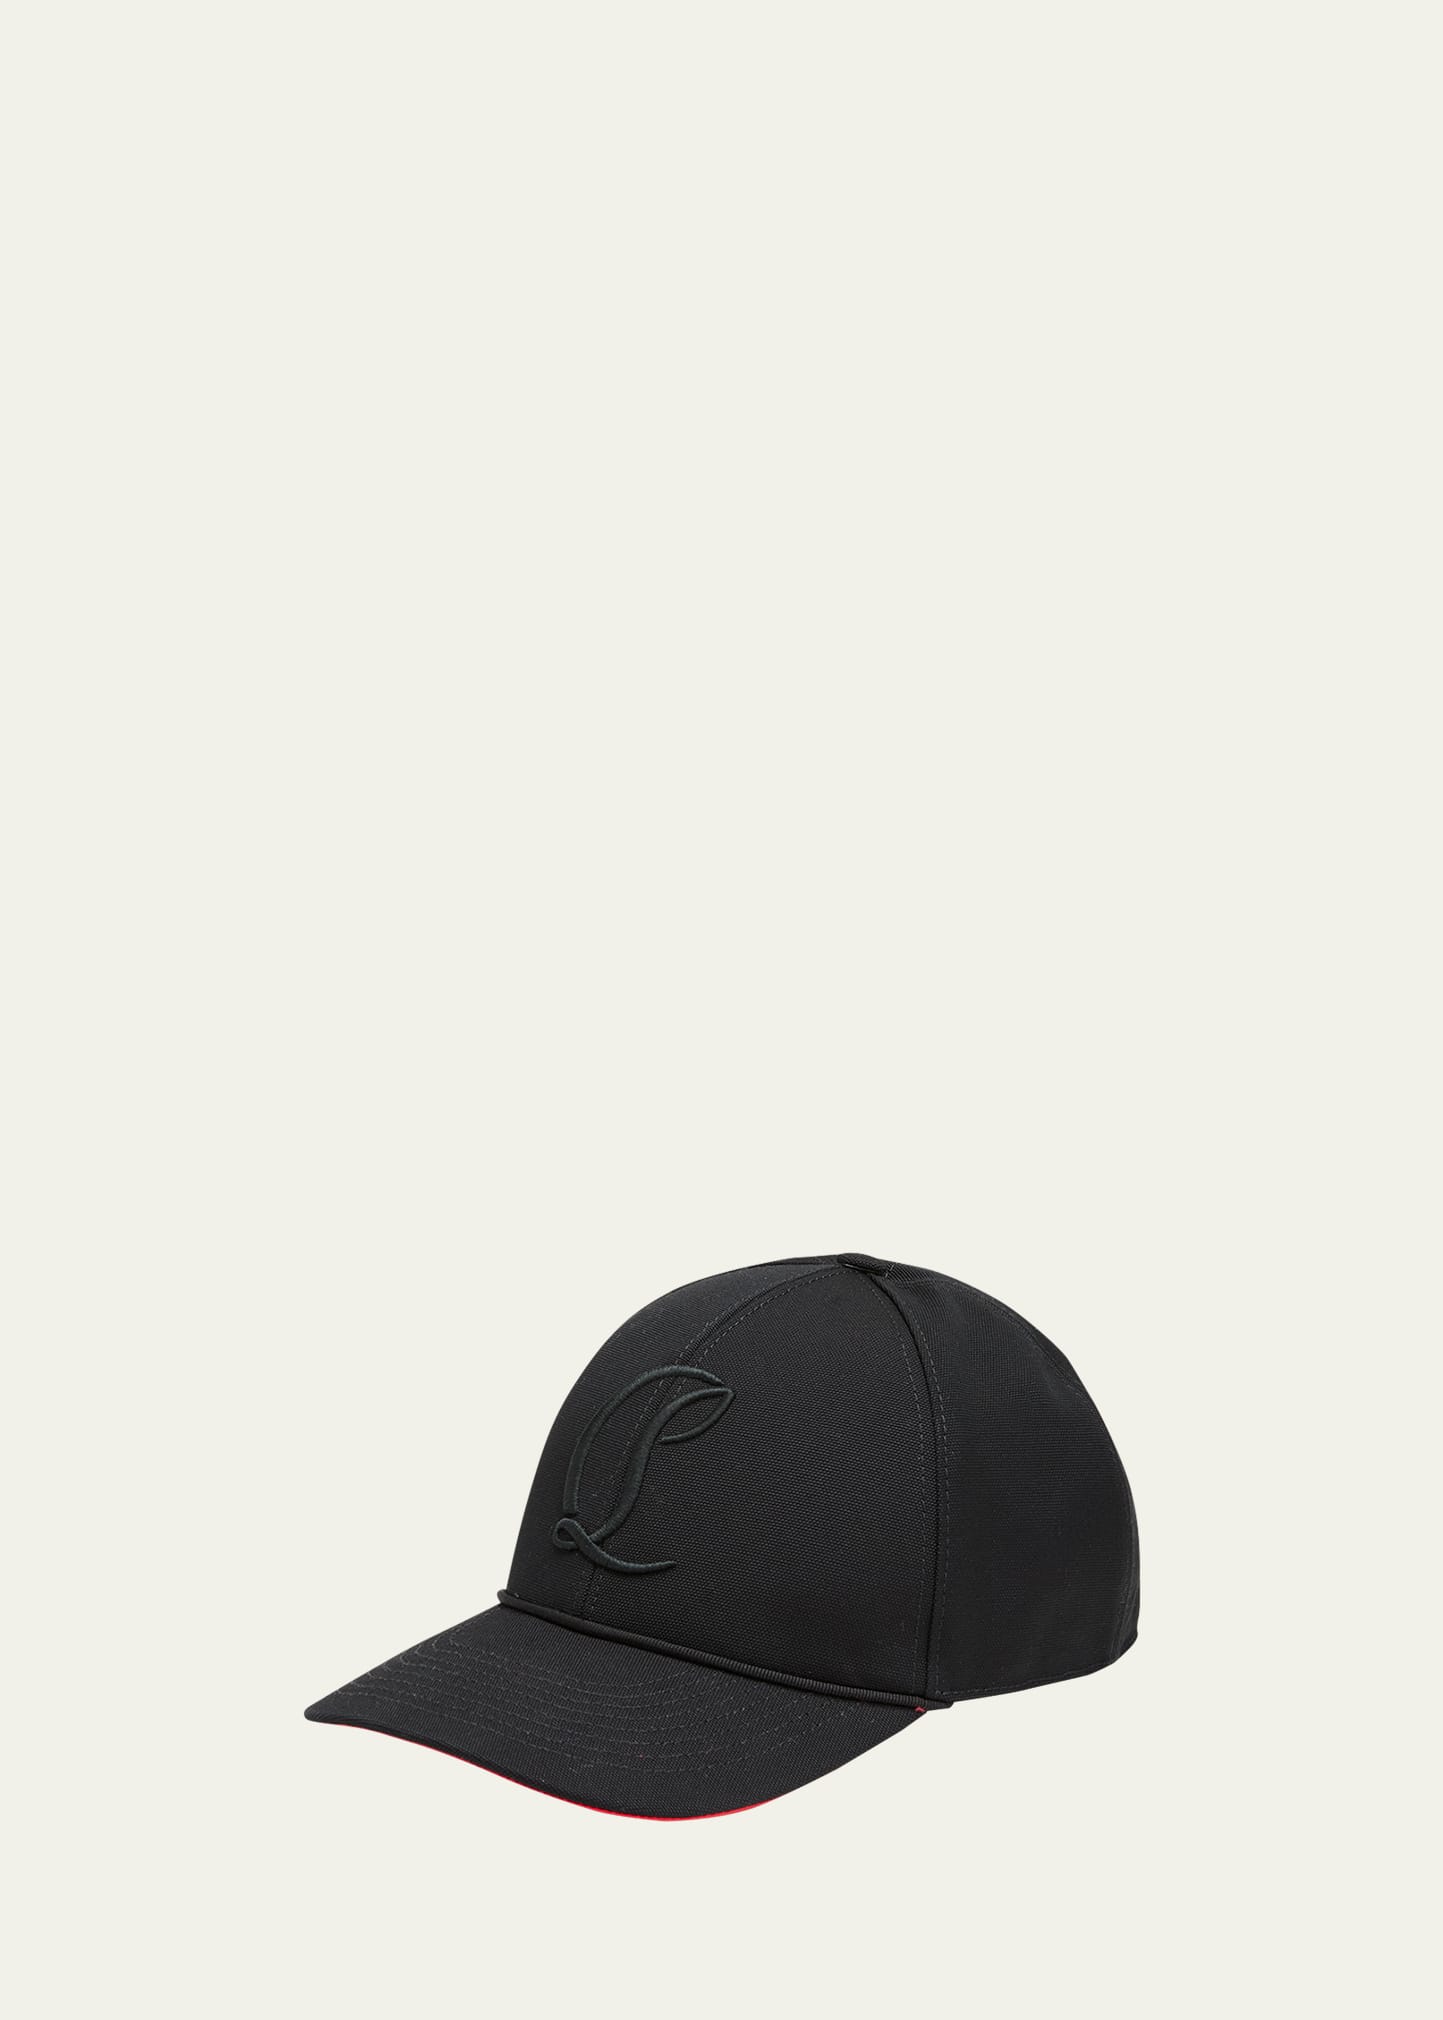 Men's Mooncrest Embroidered Baseball Hat